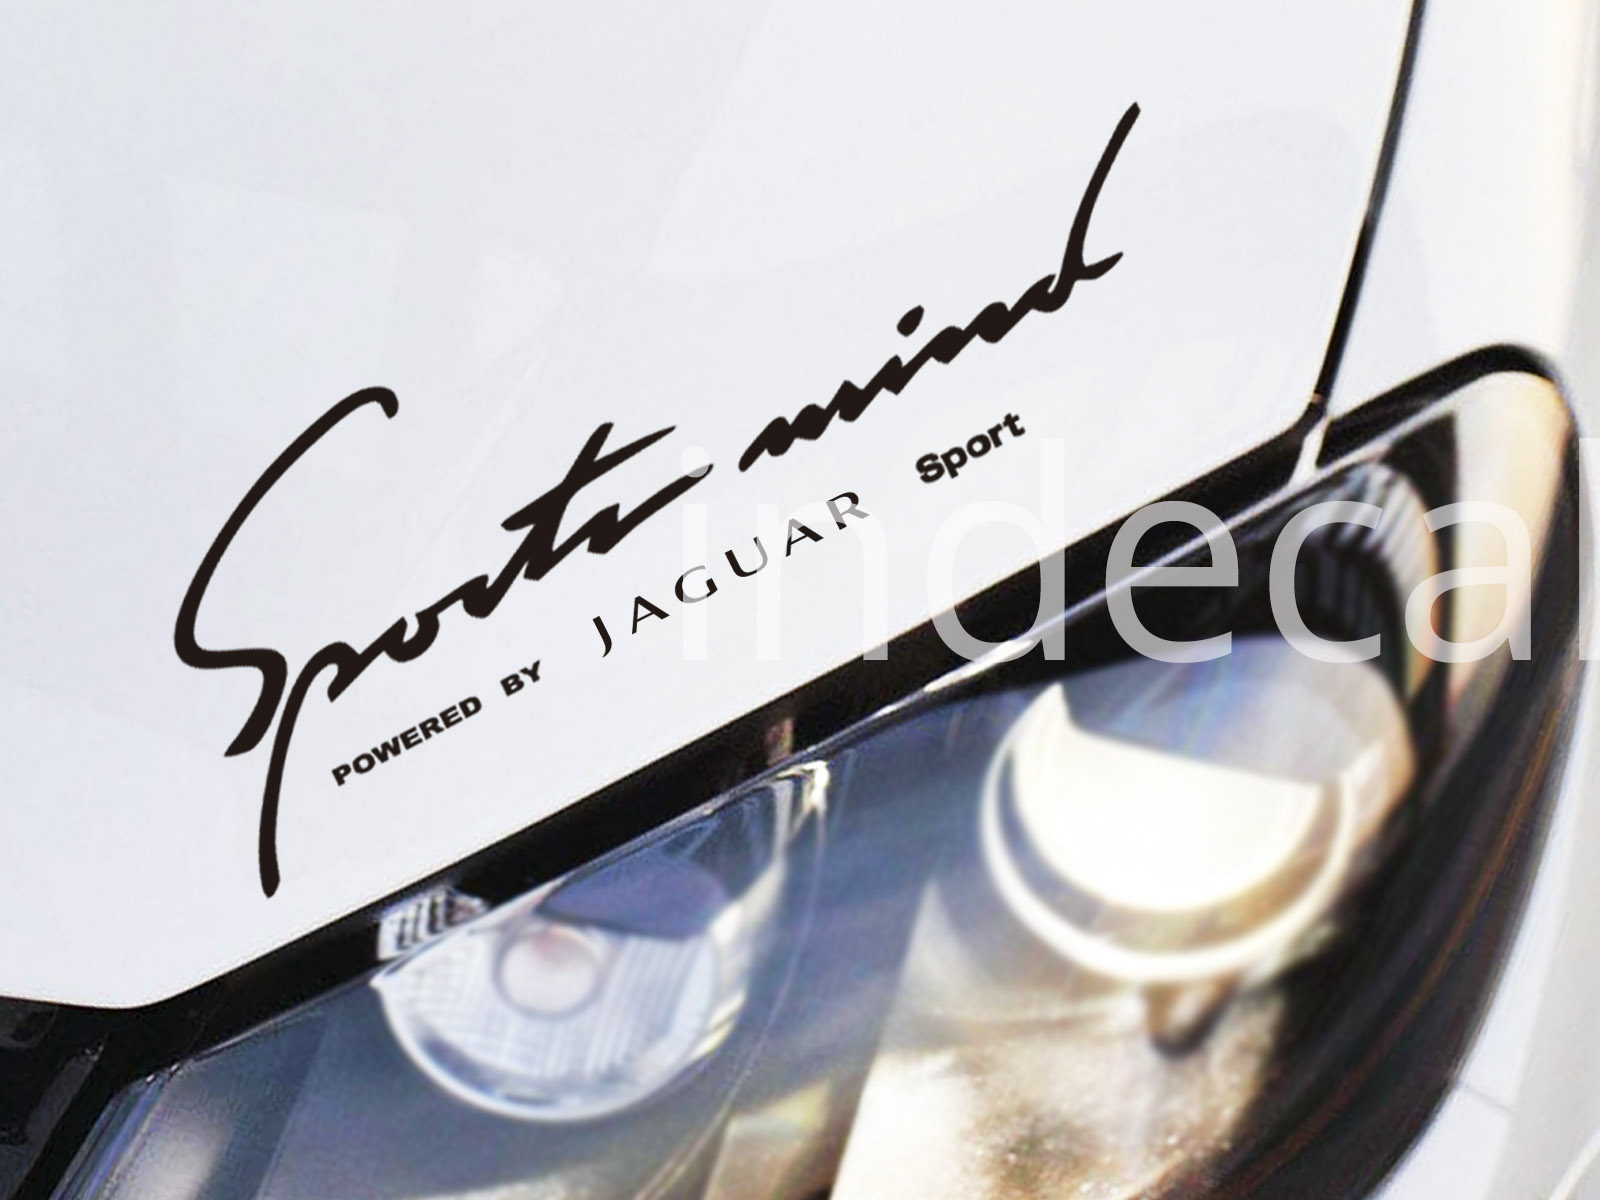 1 x Jaguar Sports Mind Sticker - Black